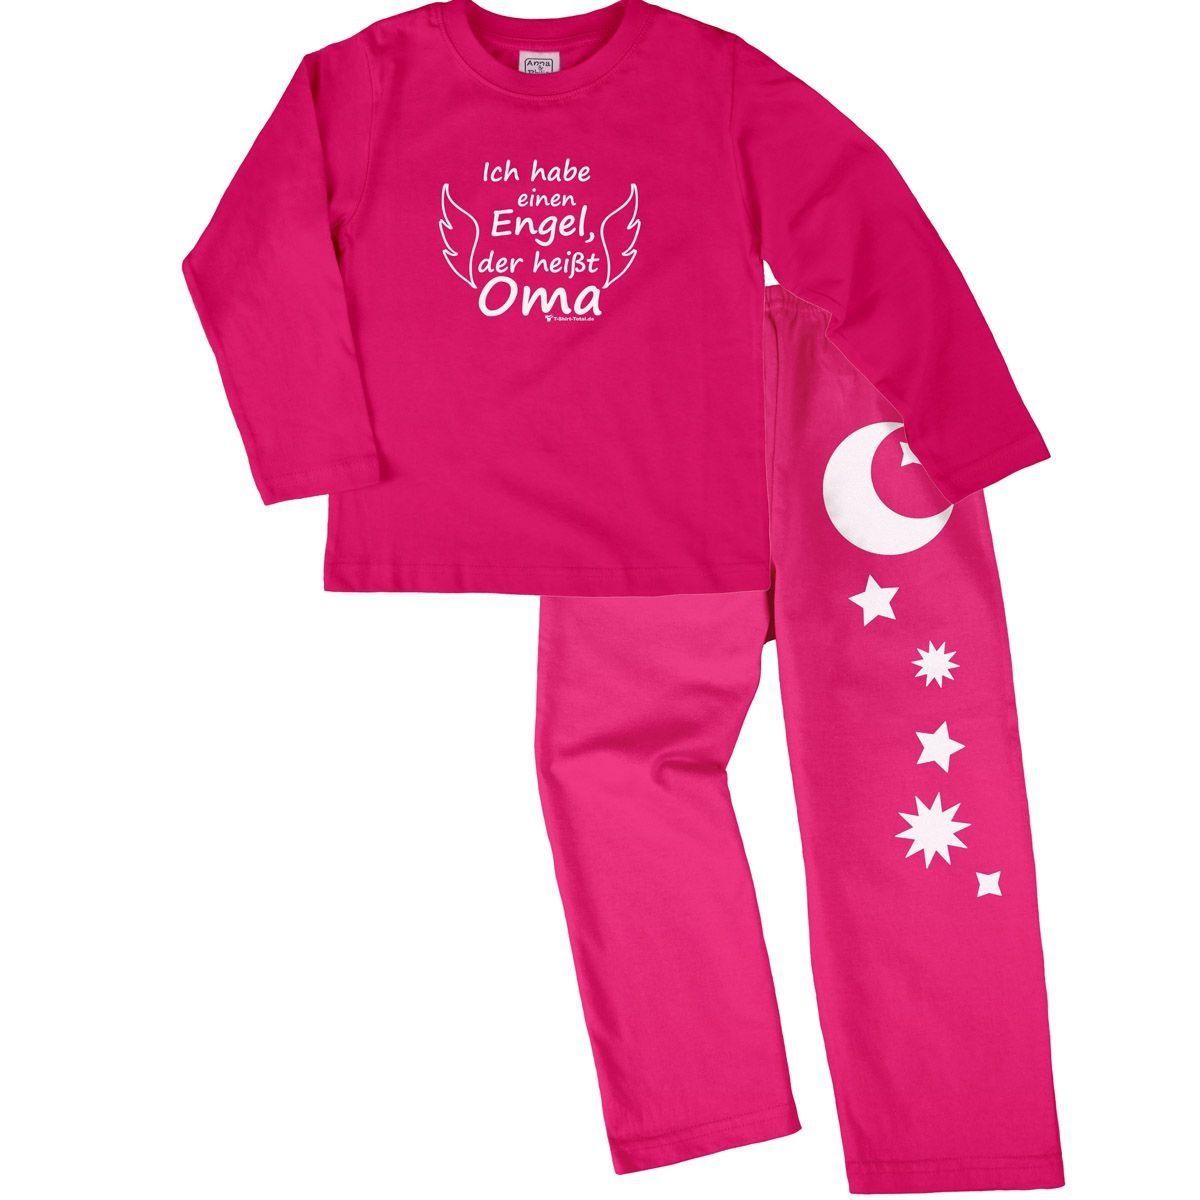 Engel Oma Pyjama Set pink / pink 122 / 128